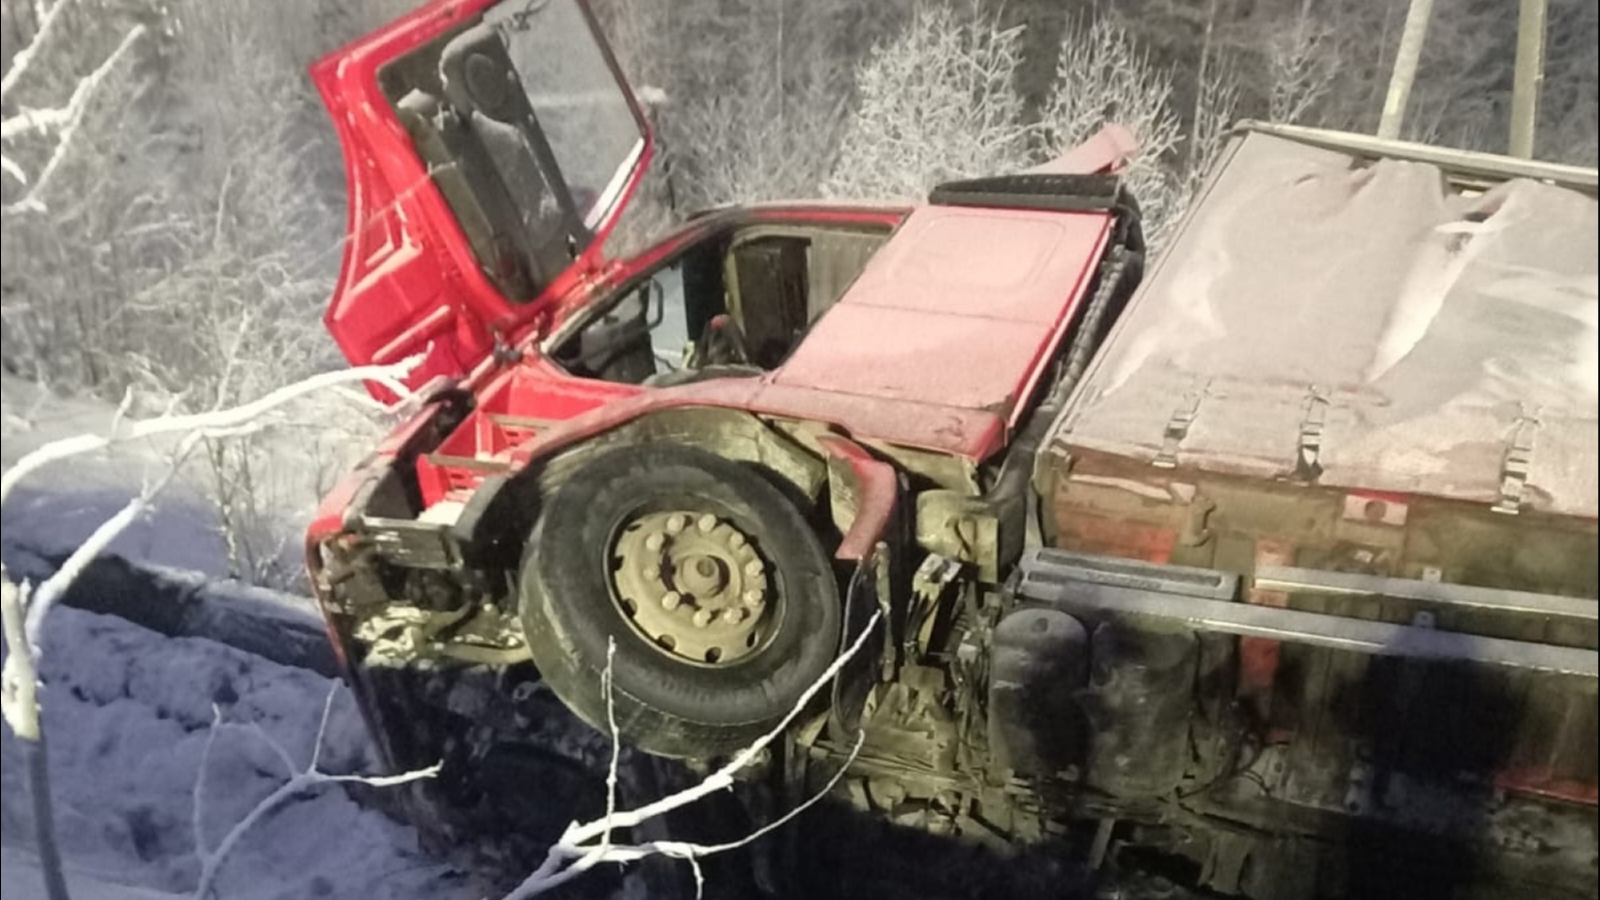 Съехавший в кювет грузовик в Апатитах мог повредить теплотрассу